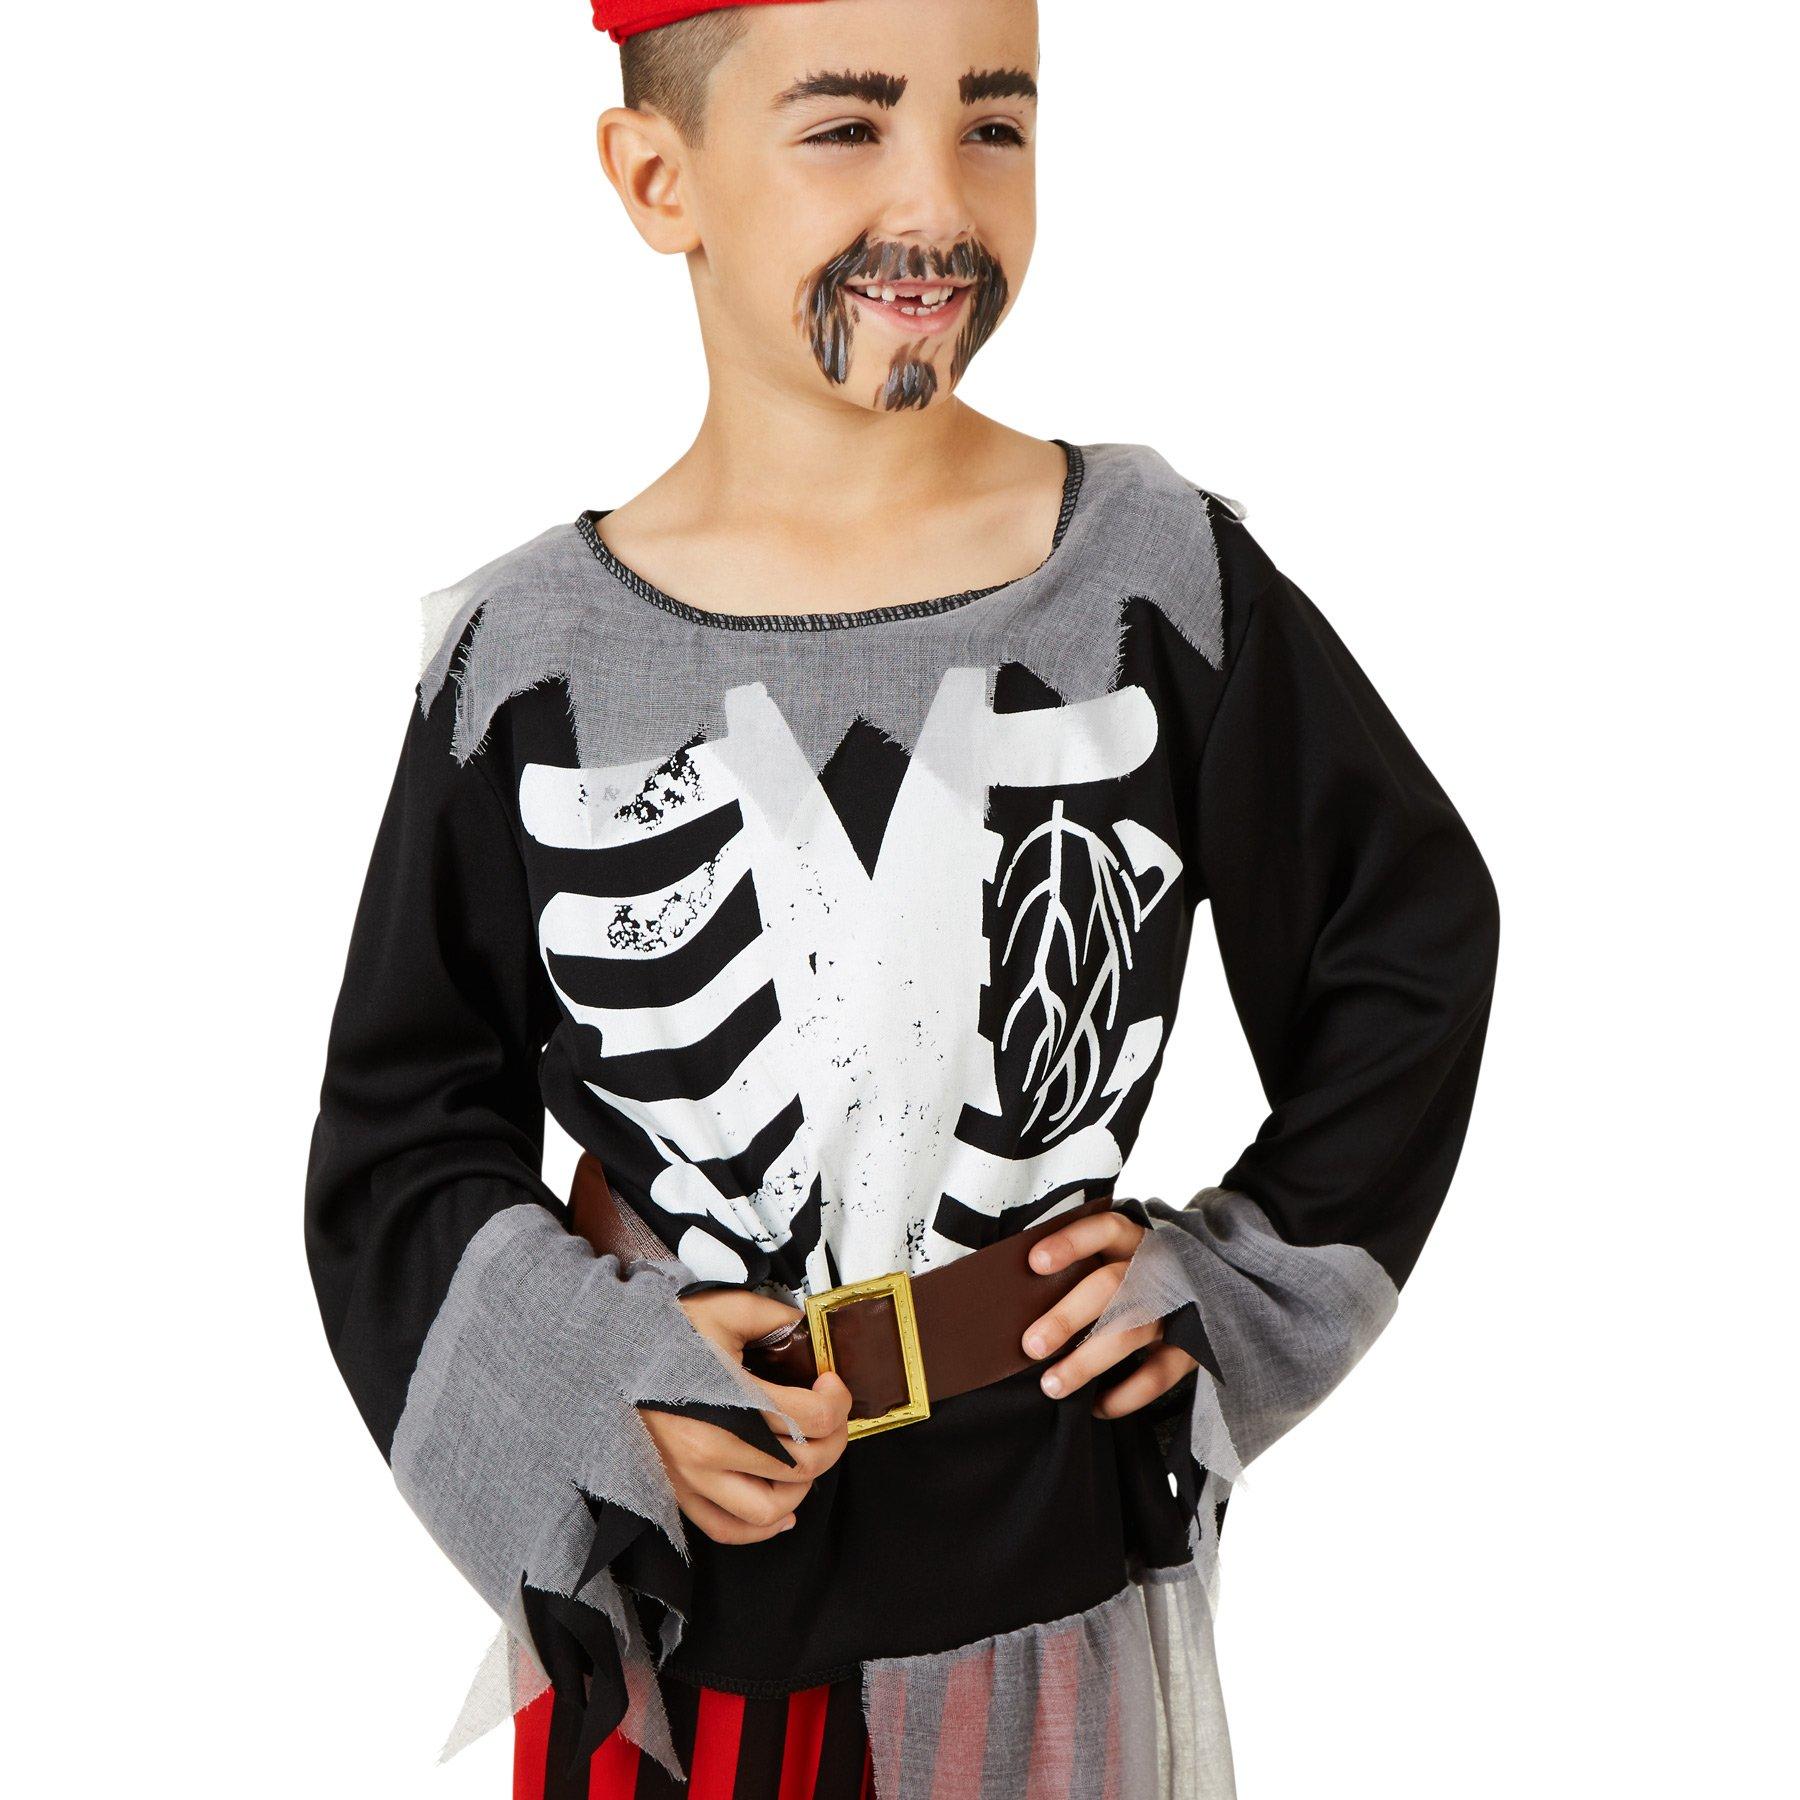 Tectake  Costume da bambino/ragazzo - Pirata 